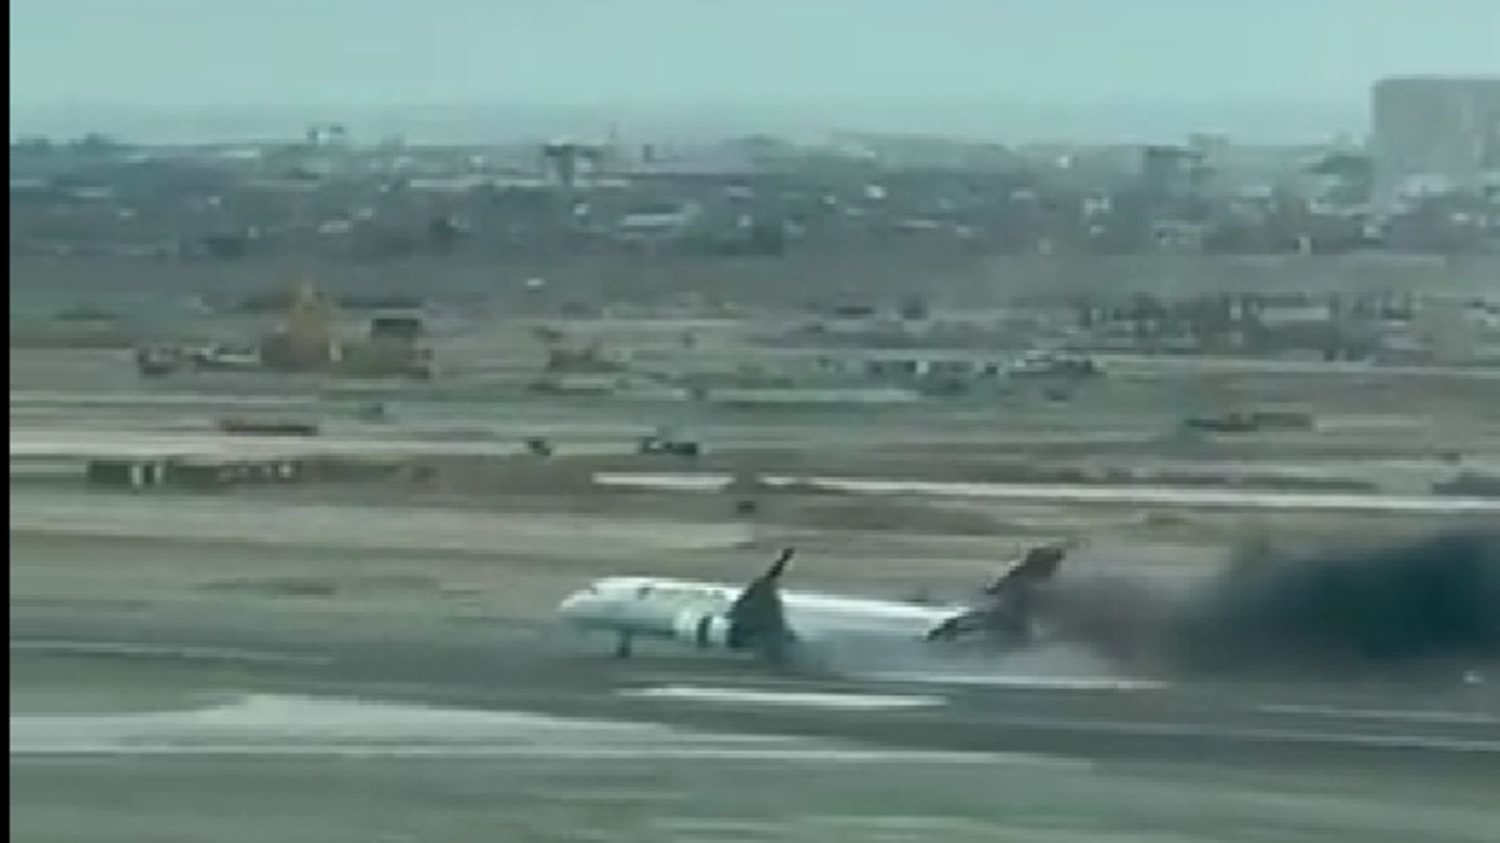 As operações do aeroporto Jorge Chávez ficaram suspensas